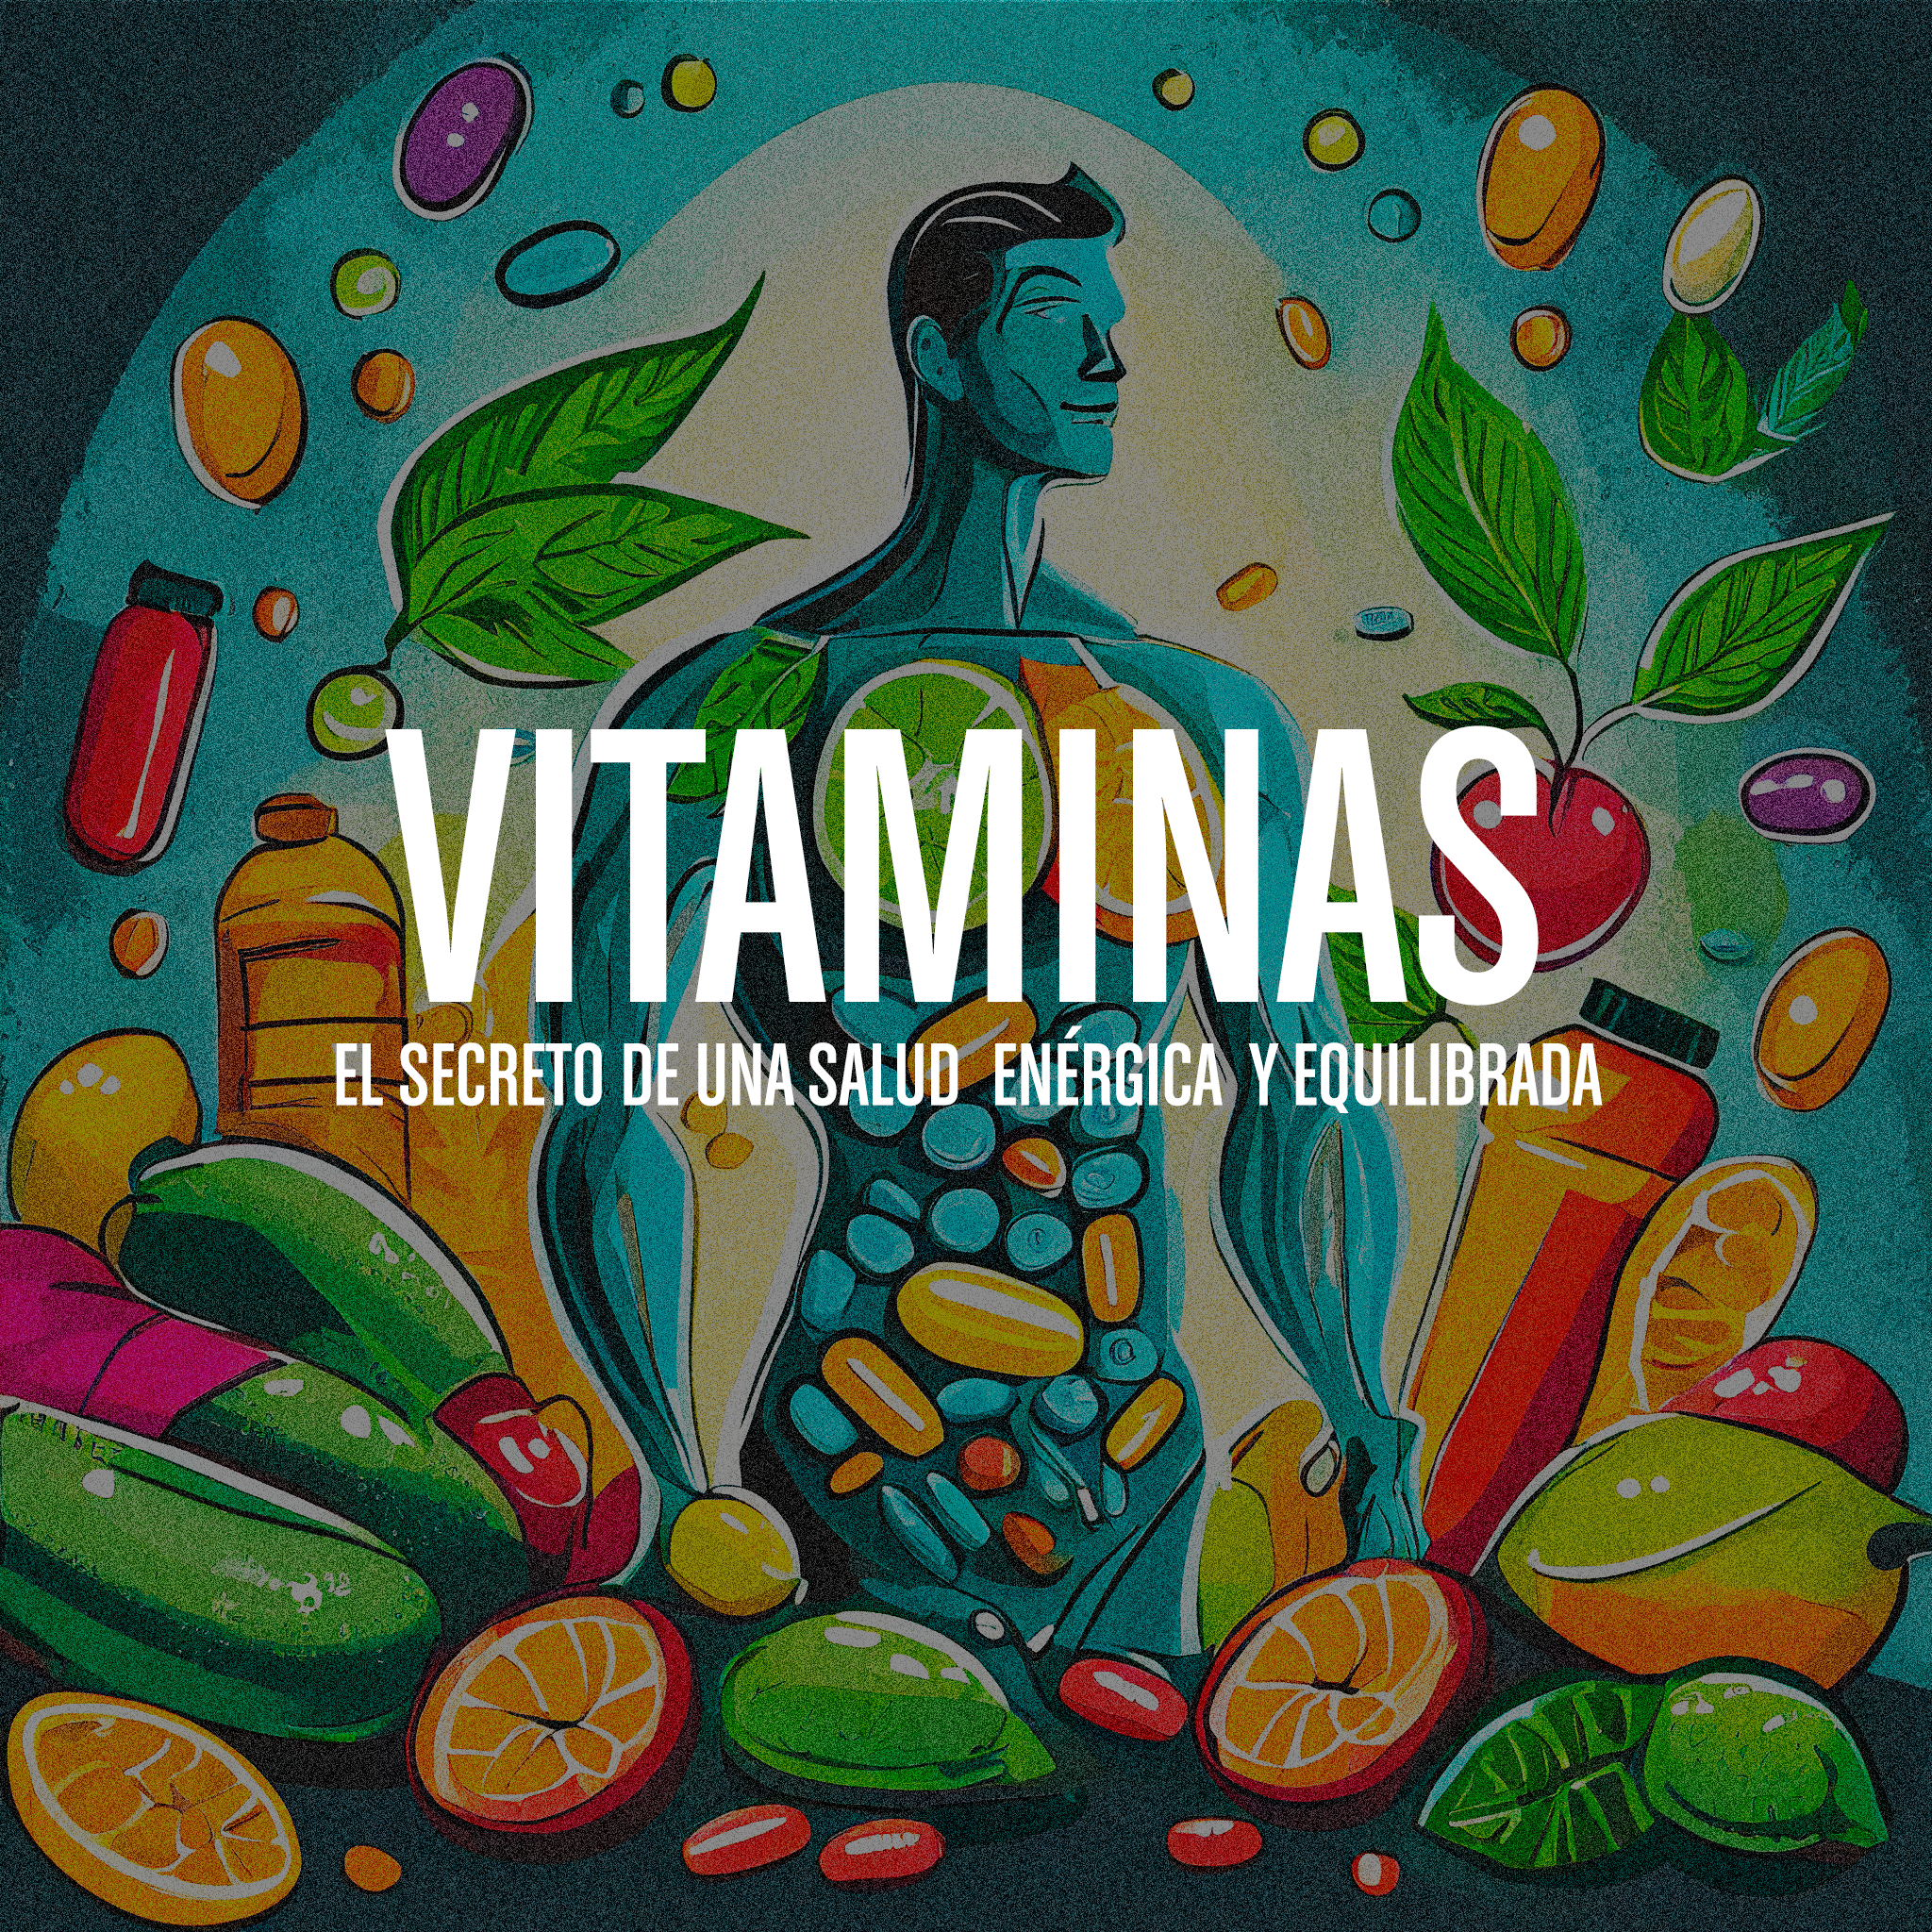 Vitaminas: El secreto de una salud enérgica y equilibrada